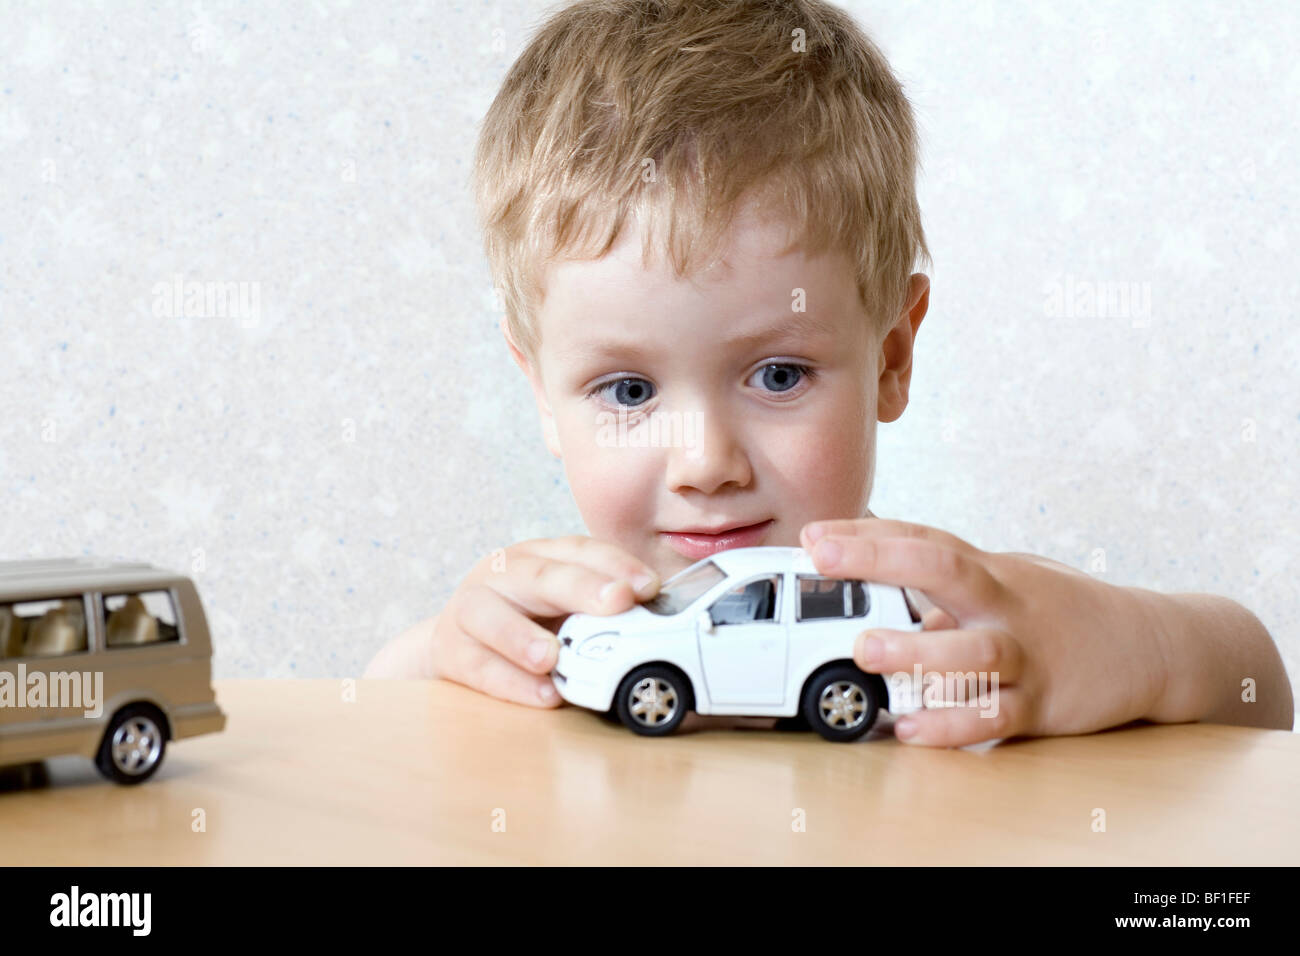 Ein kleiner Junge spielt mit einem Spielzeugauto Stockfoto